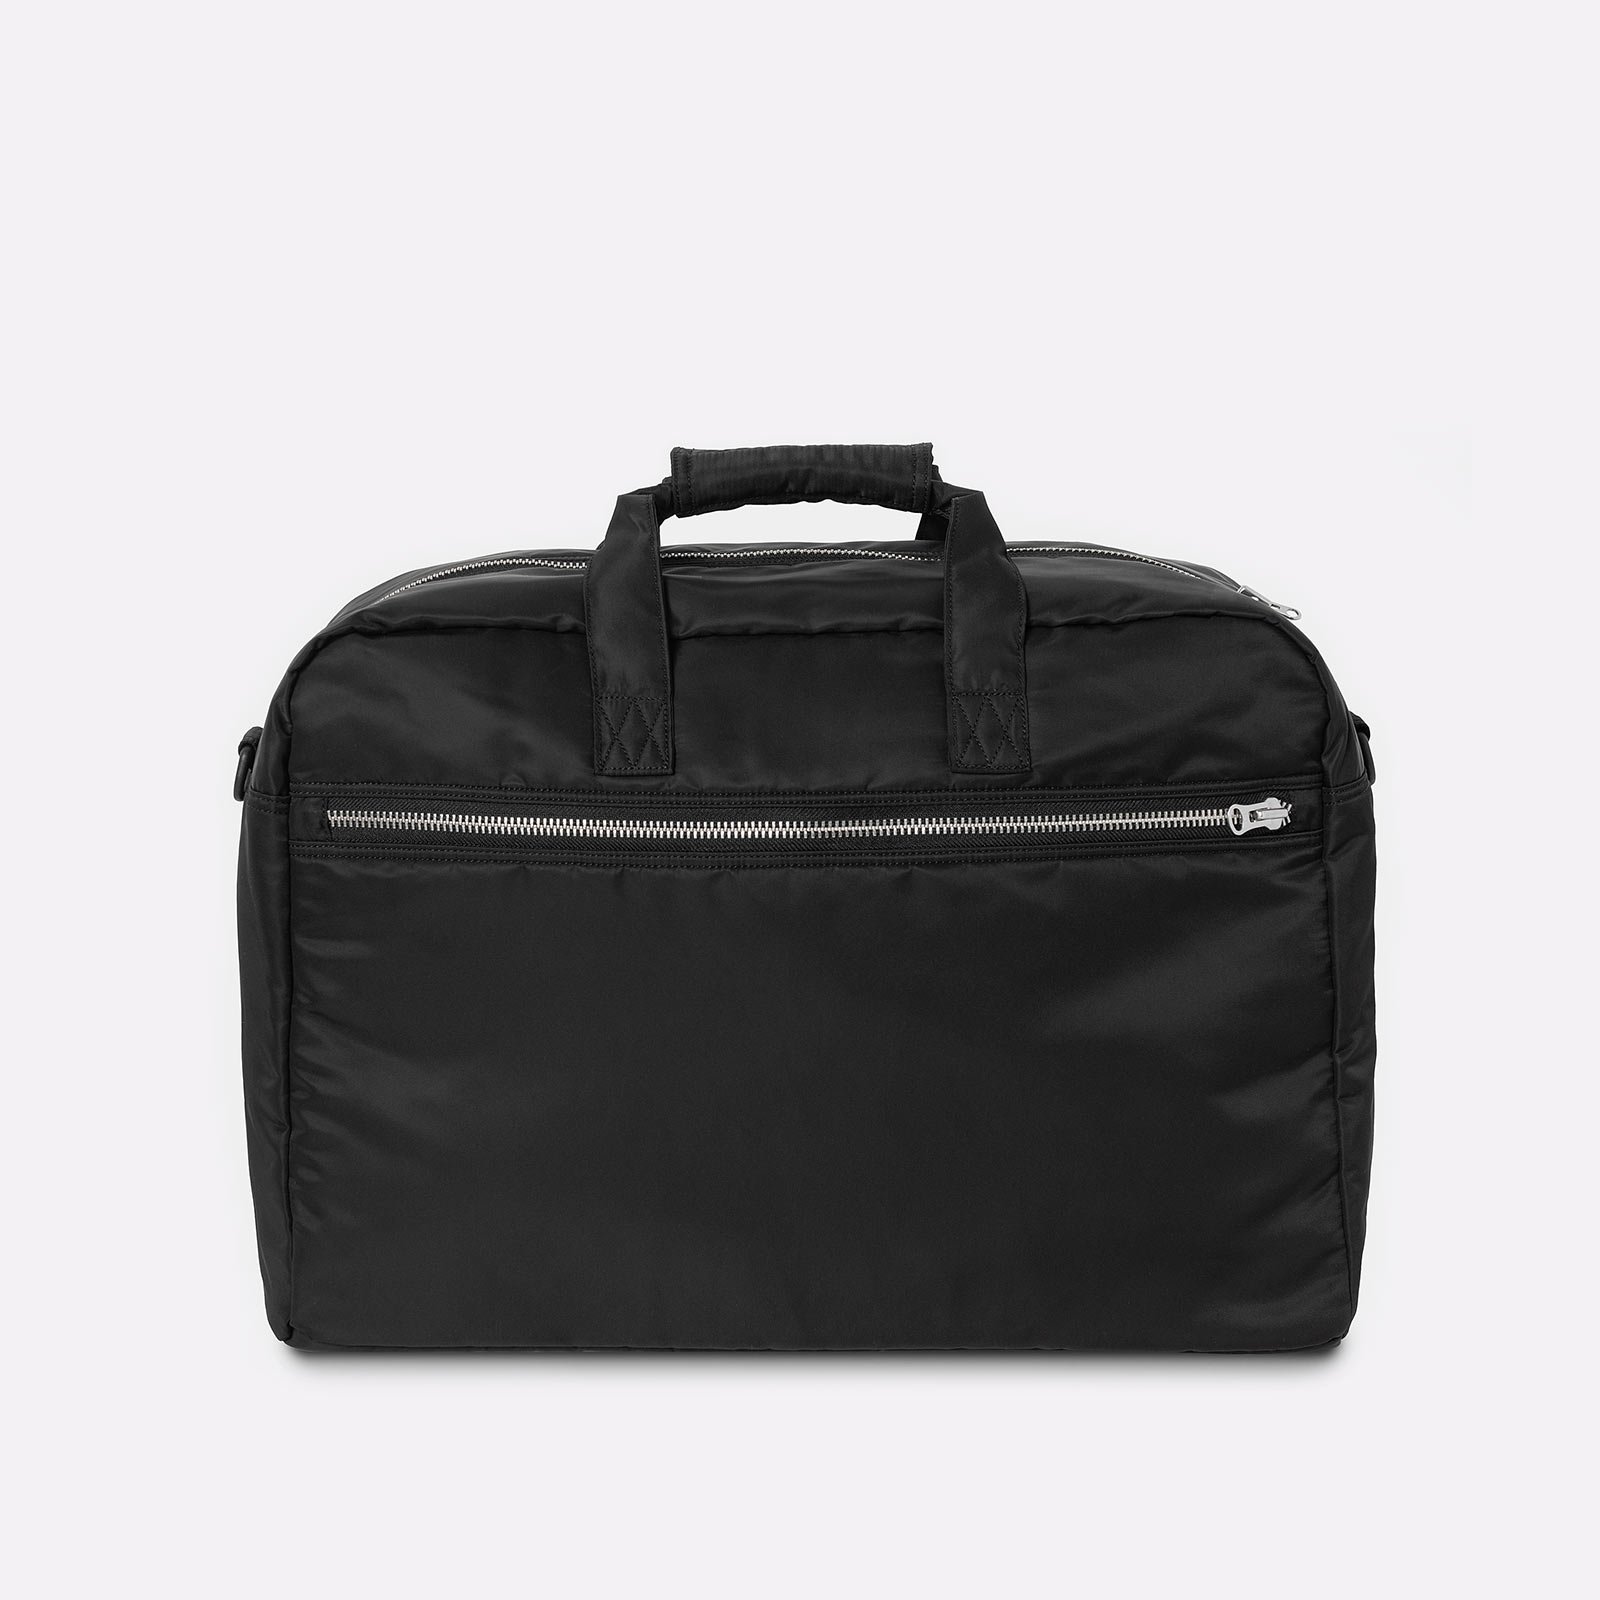 сумка Carhartt WIP Otley Weekend Bag  (I033105-black)  - цена, описание, фото 2